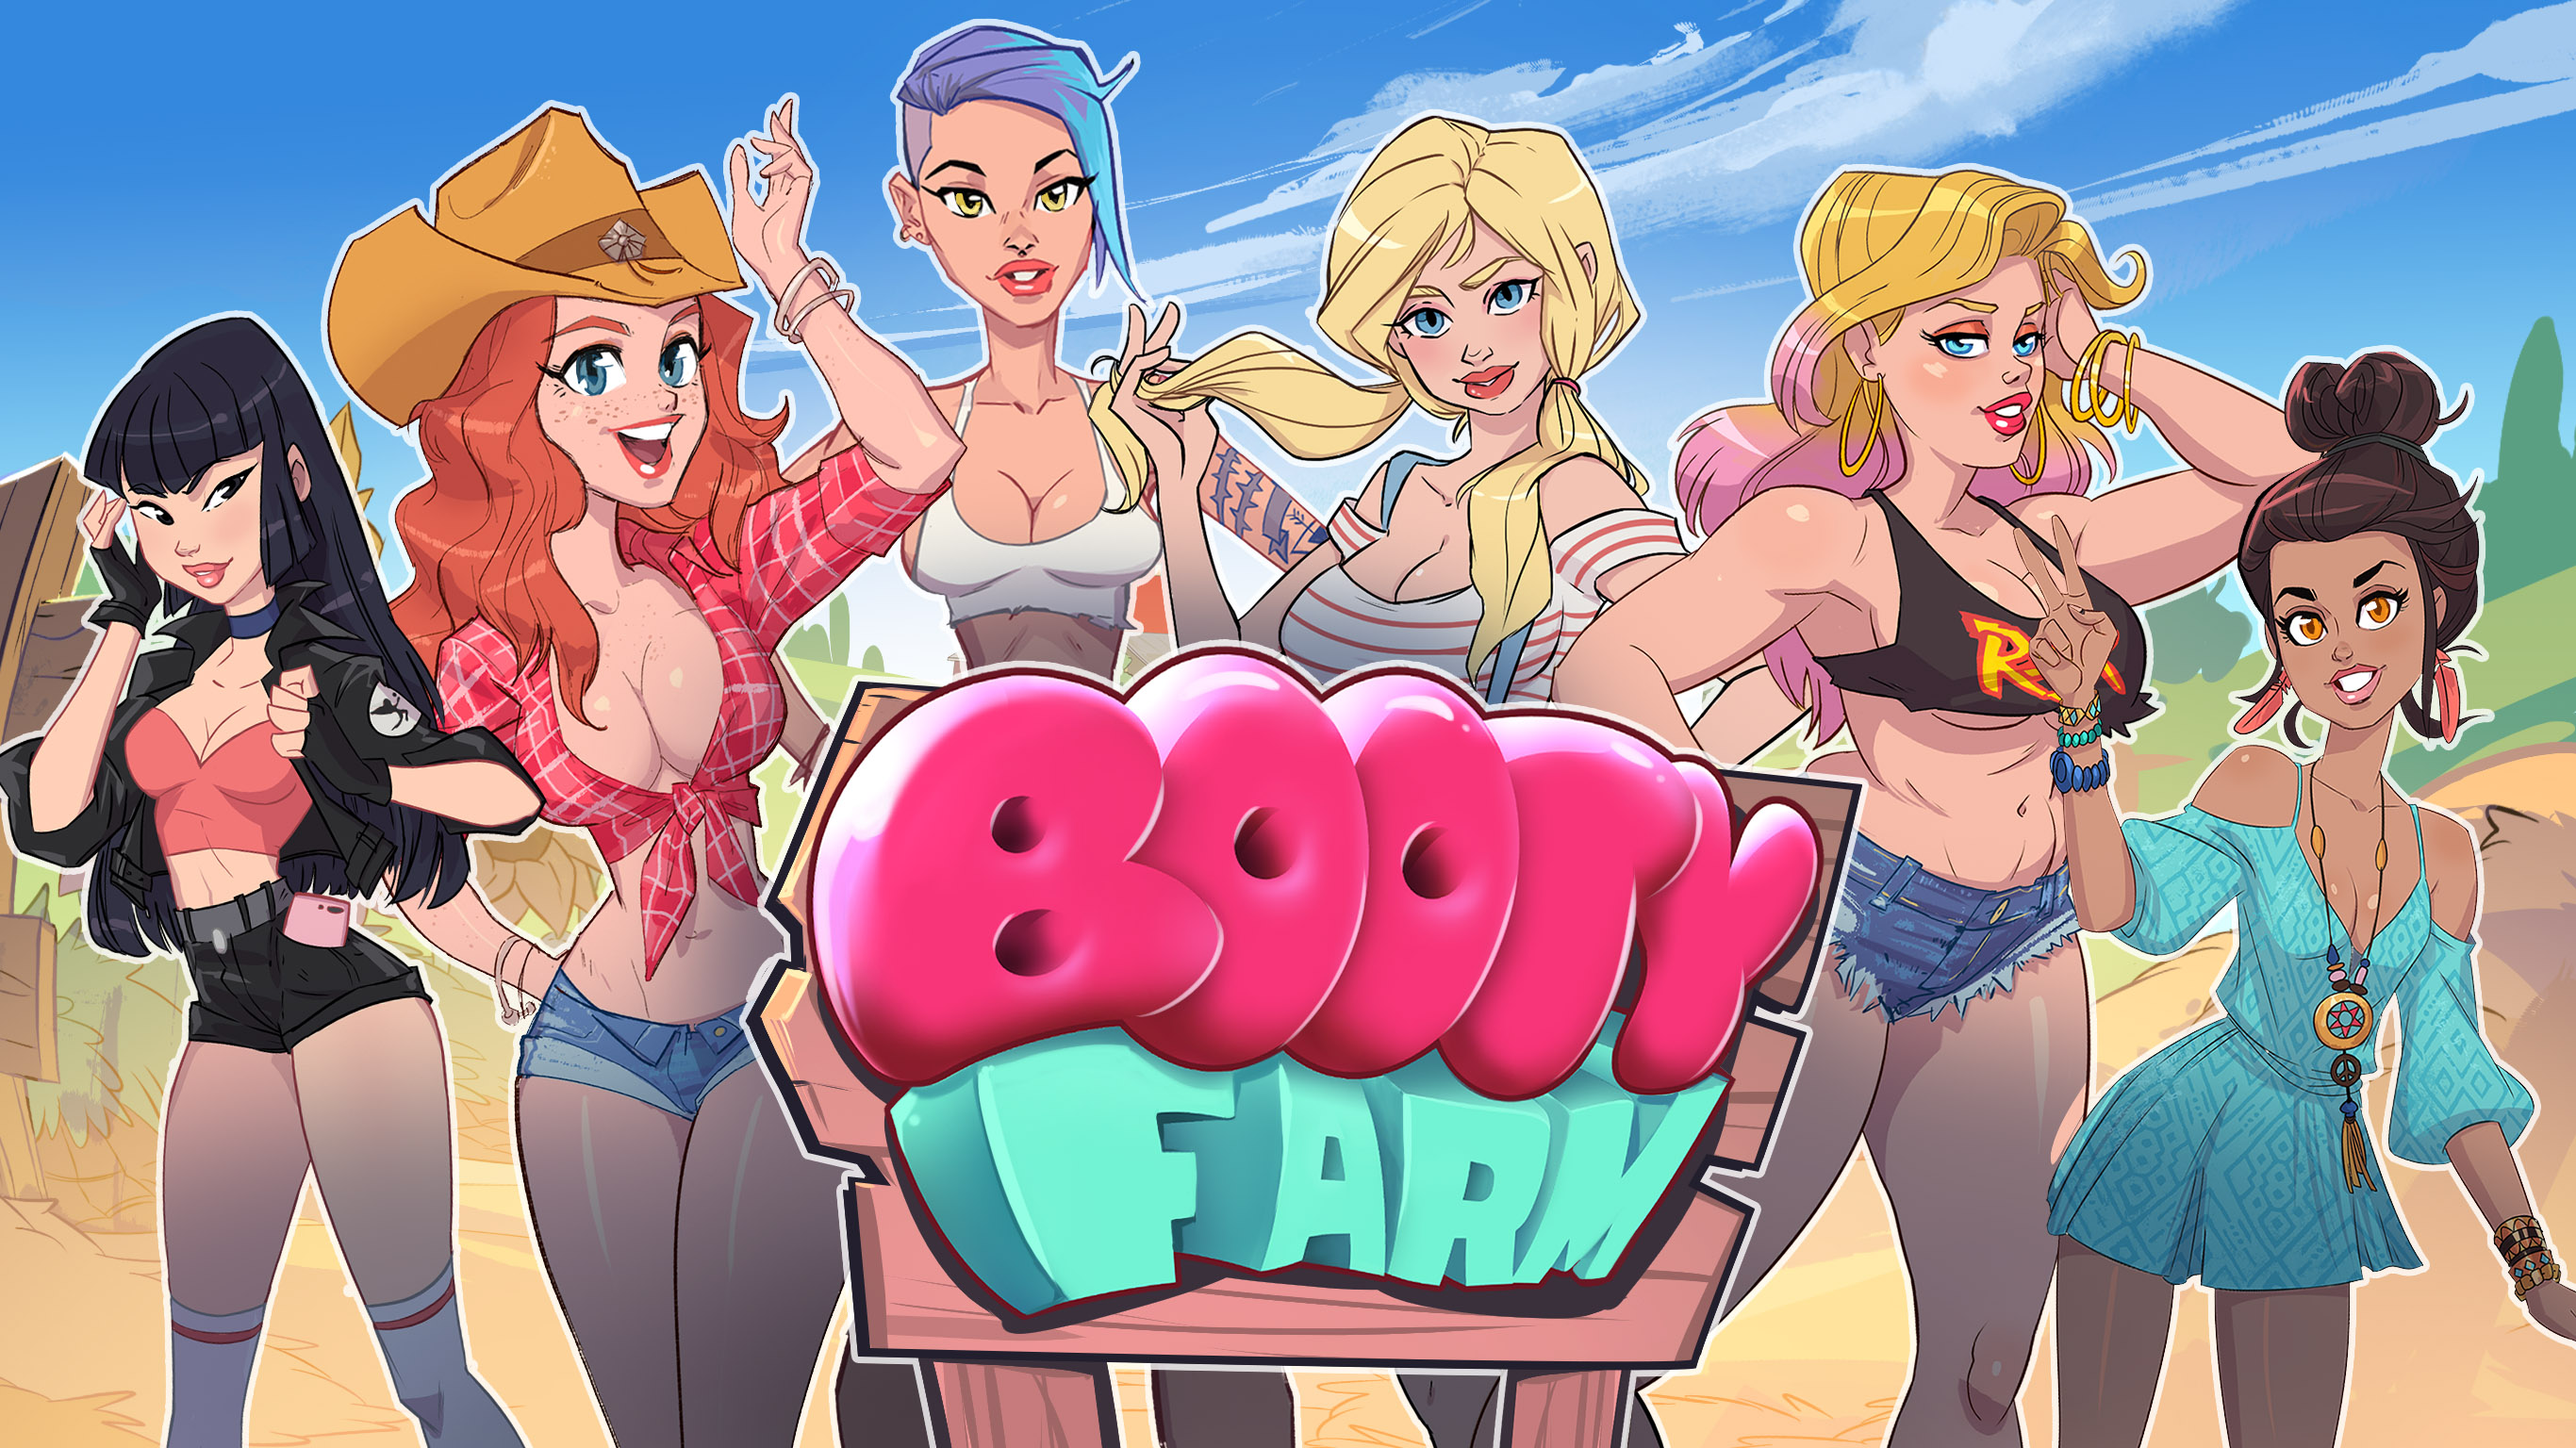 Play игр 18. Booty Farm игра Джейн. Мобильные игры для взрослых. Эротическая браузерная игра. Игры 18.